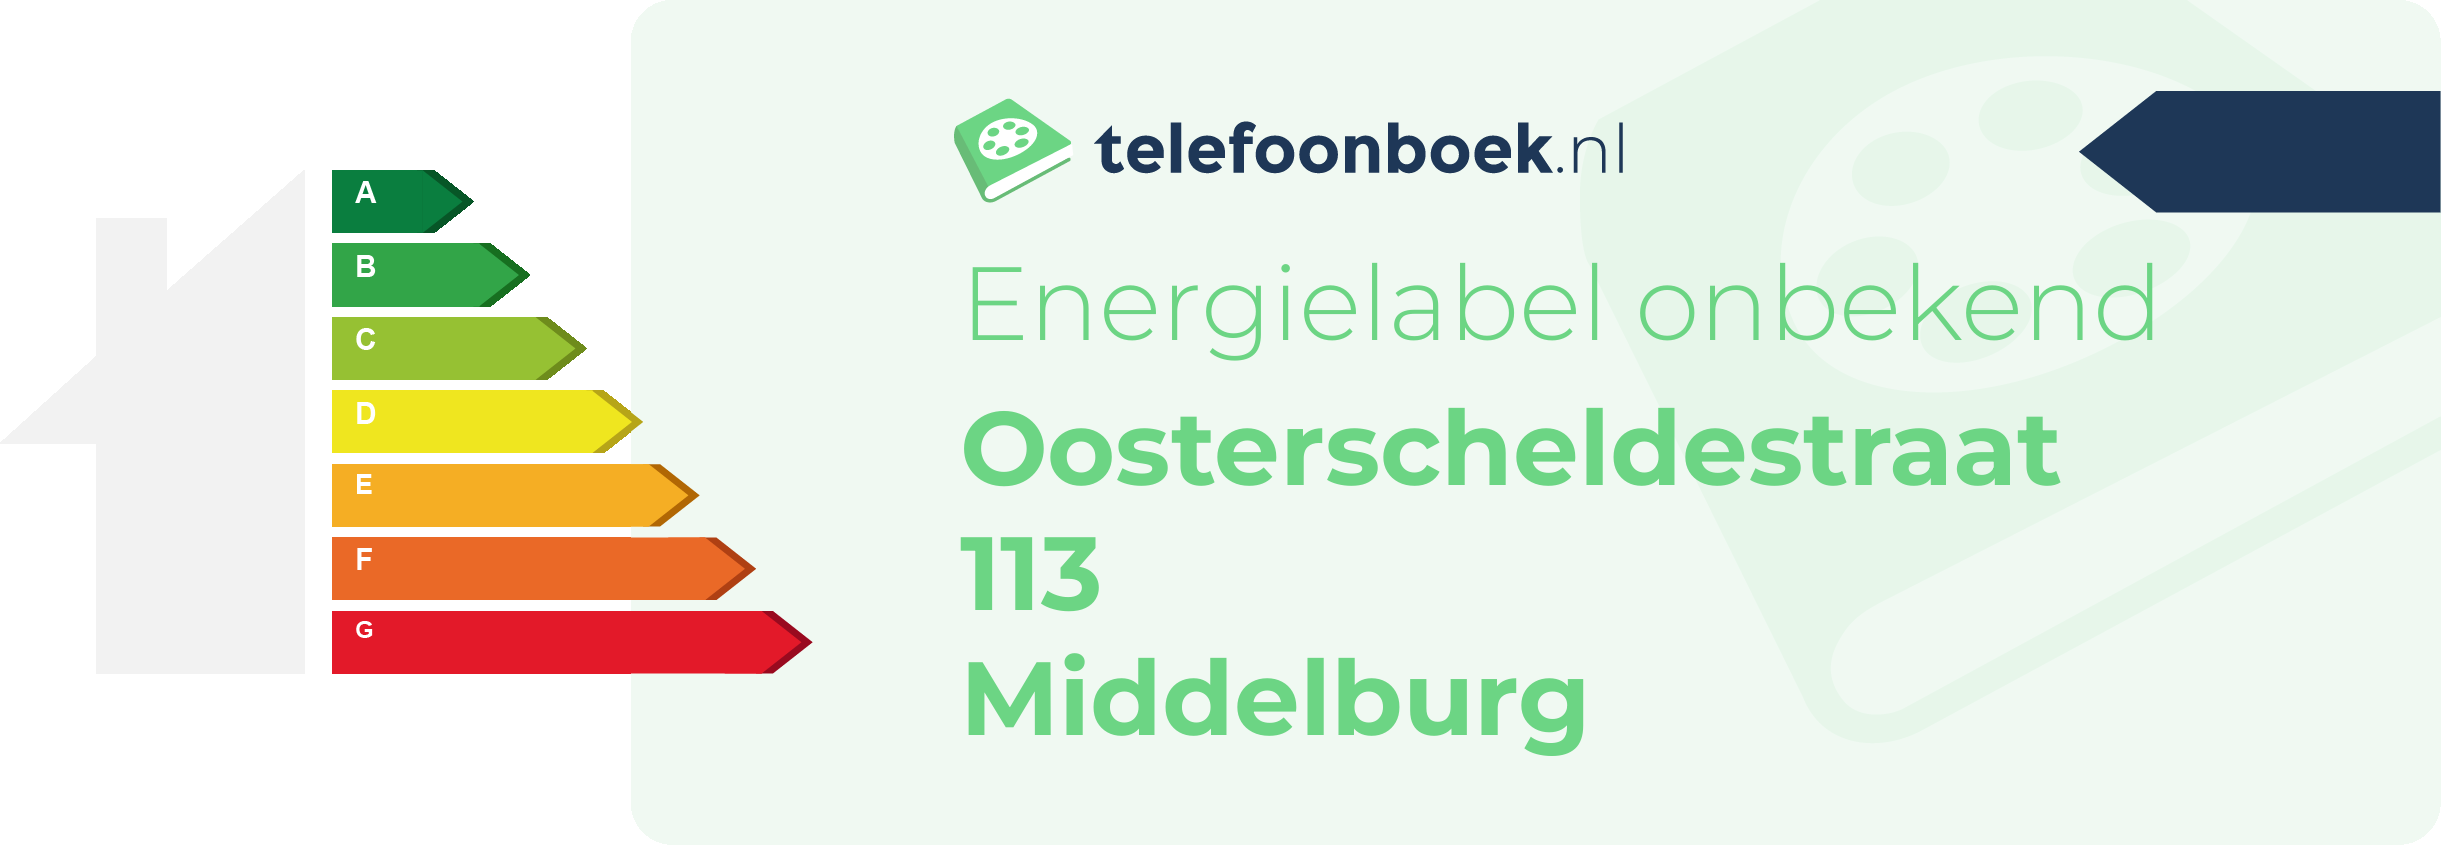 Energielabel Oosterscheldestraat 113 Middelburg